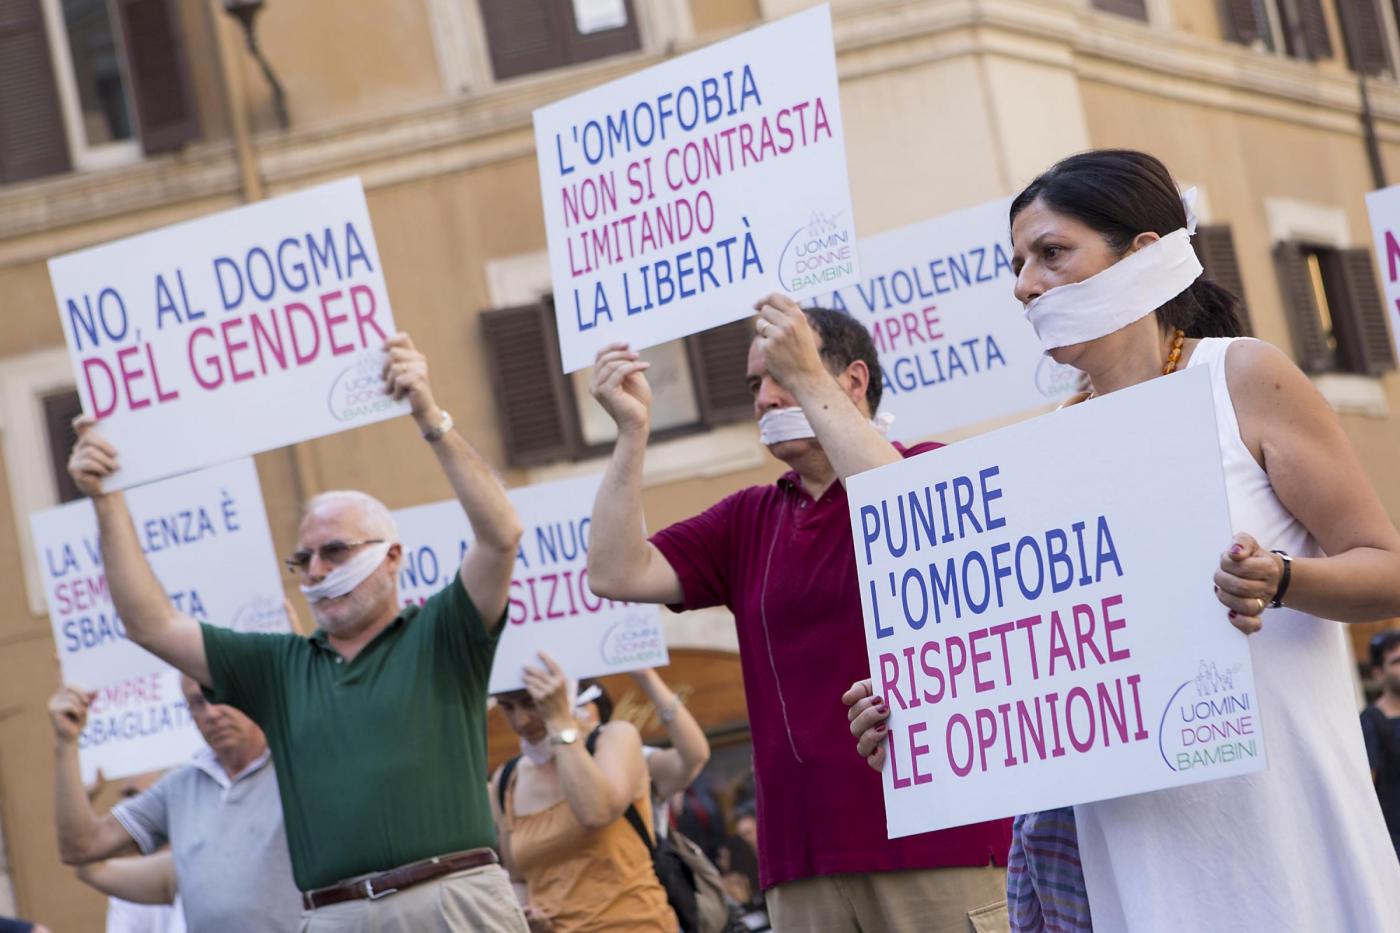 Piazza Montecitorio, flash mob per dire no alla legge contro l'omofobia10